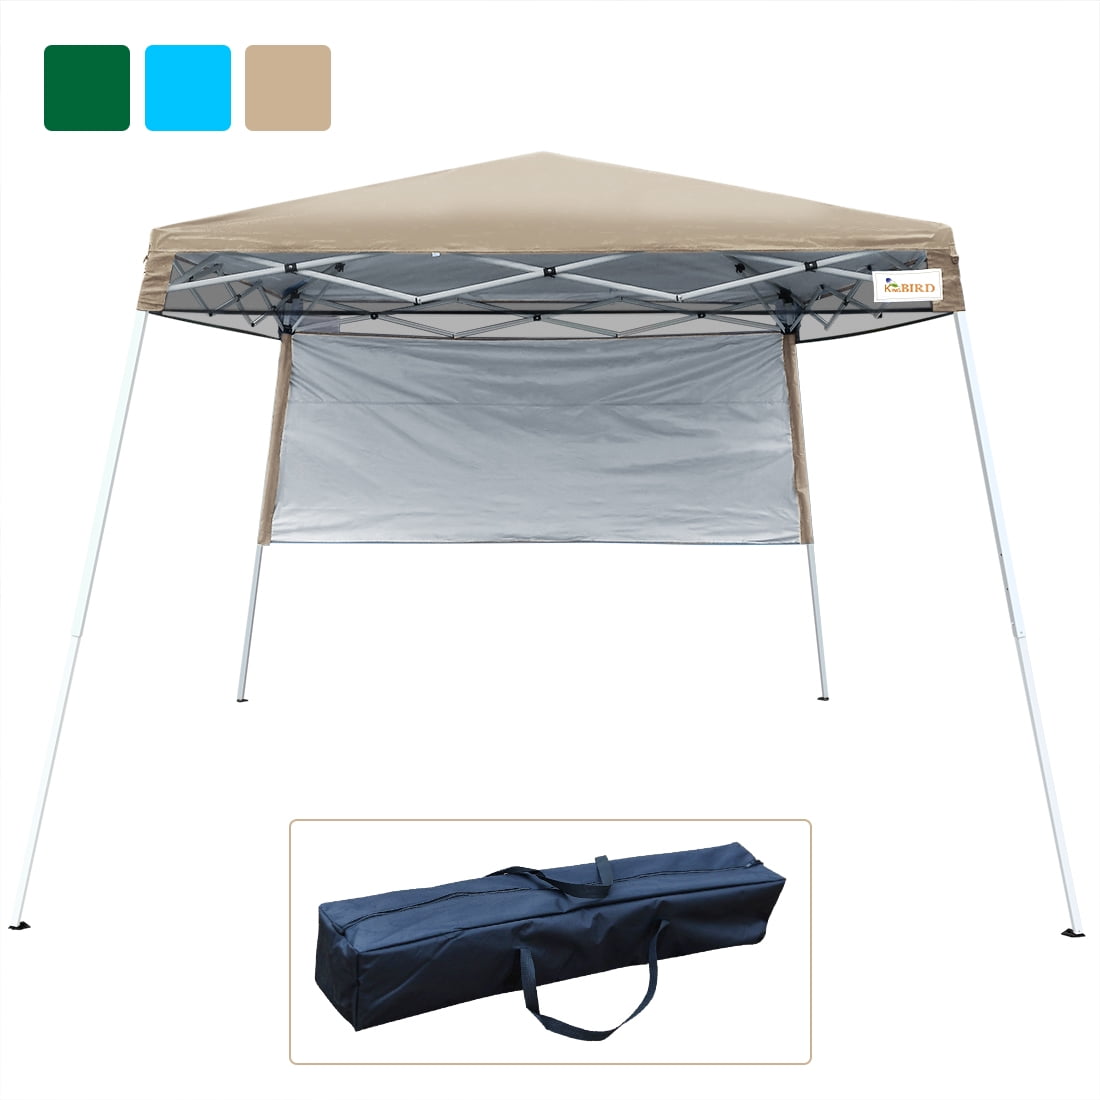 Quictent 10x10 Ez Pop Up Canopy Tent Instant Folding Outdoor Canopy Waterproof 